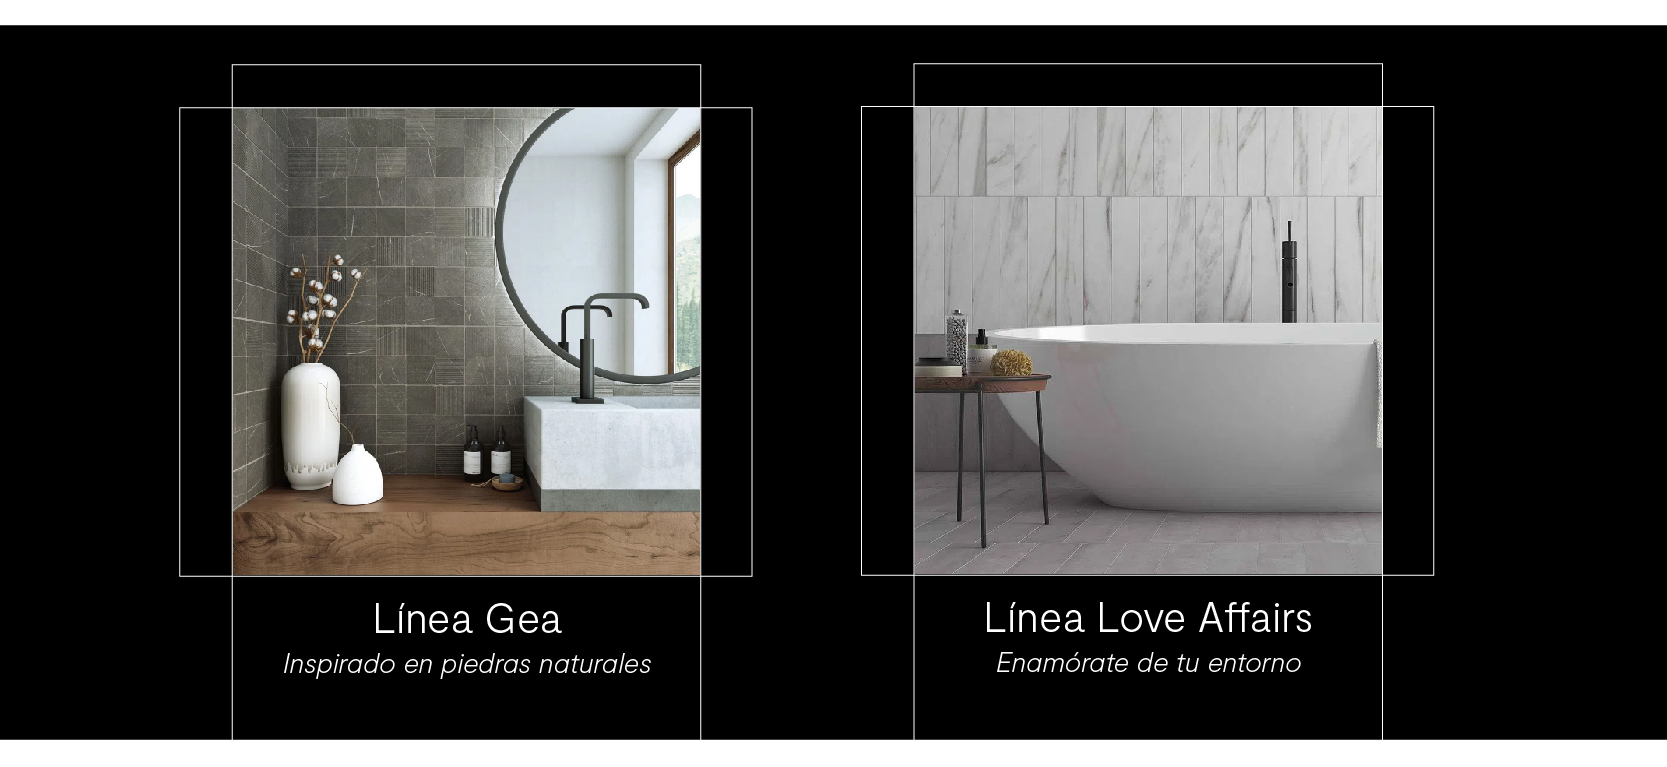 minimalismo, pureza, blanca, mármol, look piedra, baño moderno